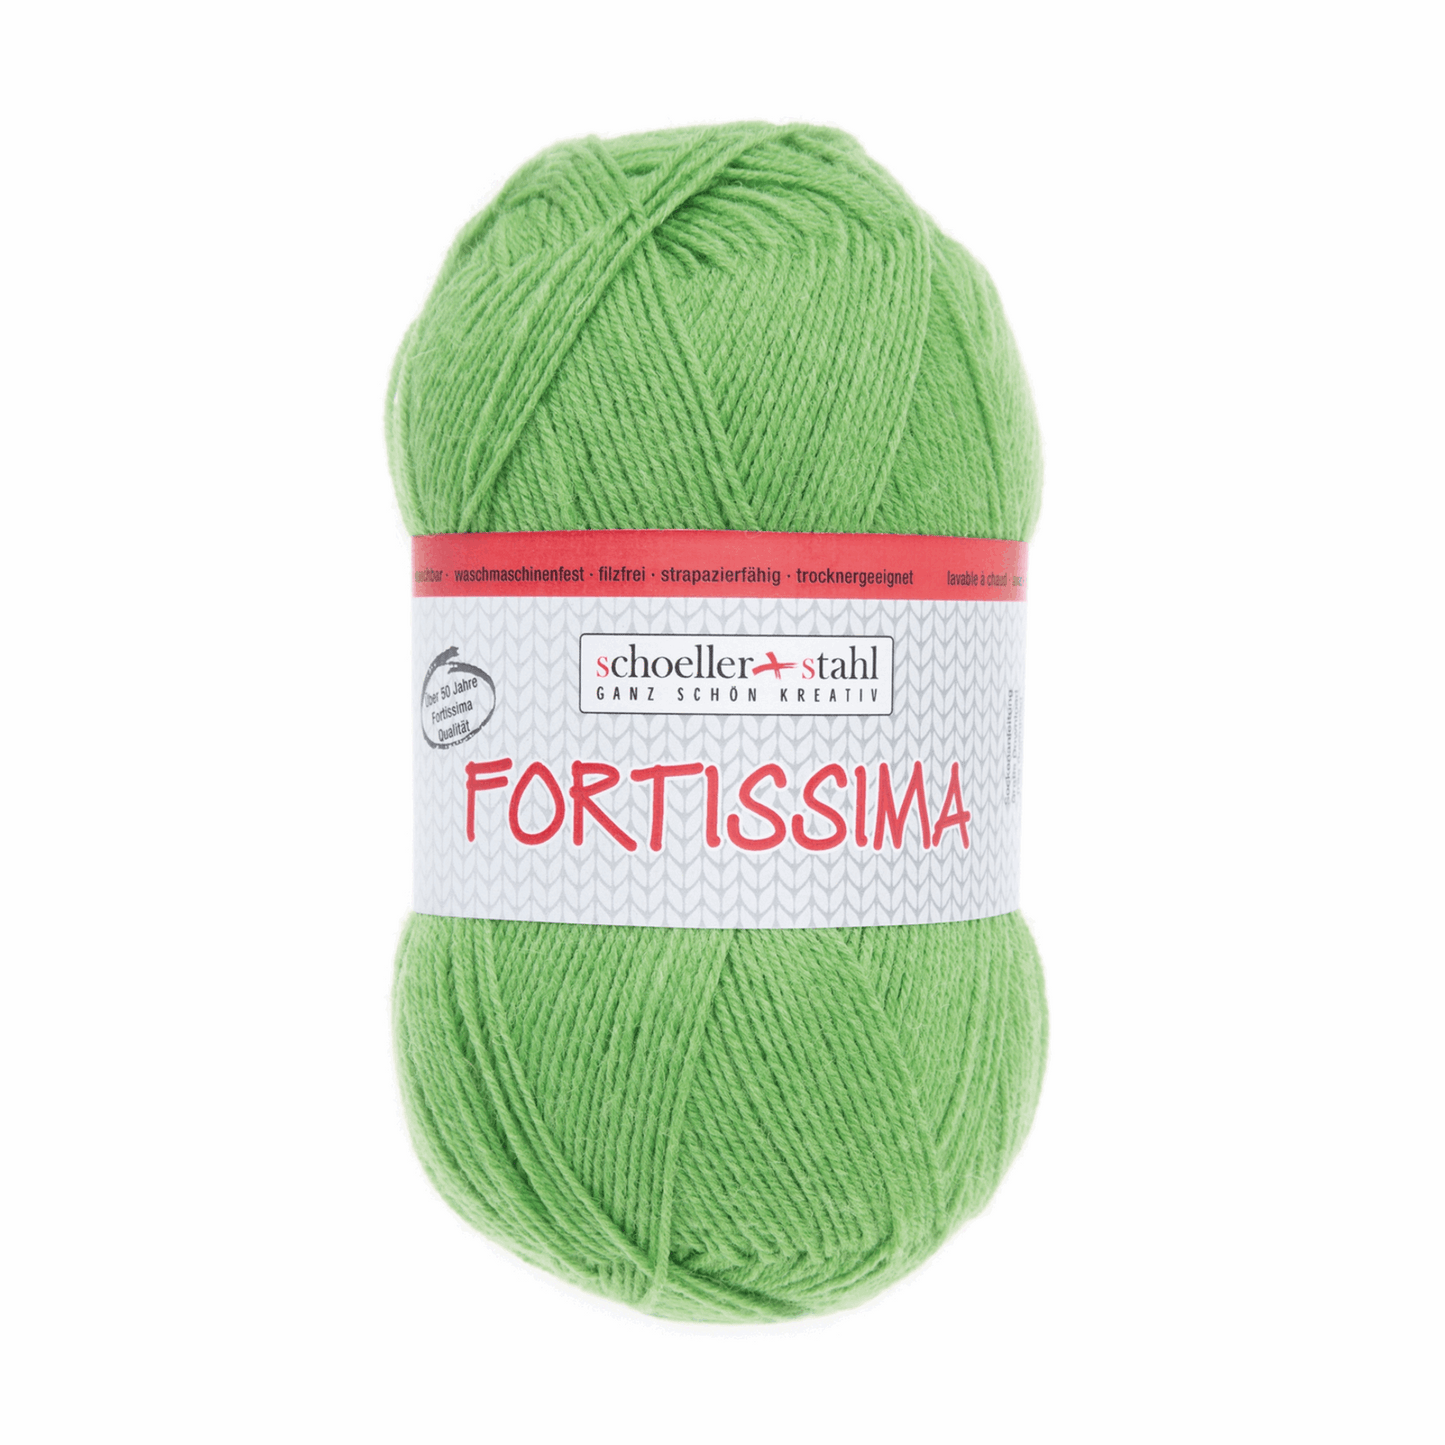 Fortissima socka 100, 90038, Farbe 2006, gras